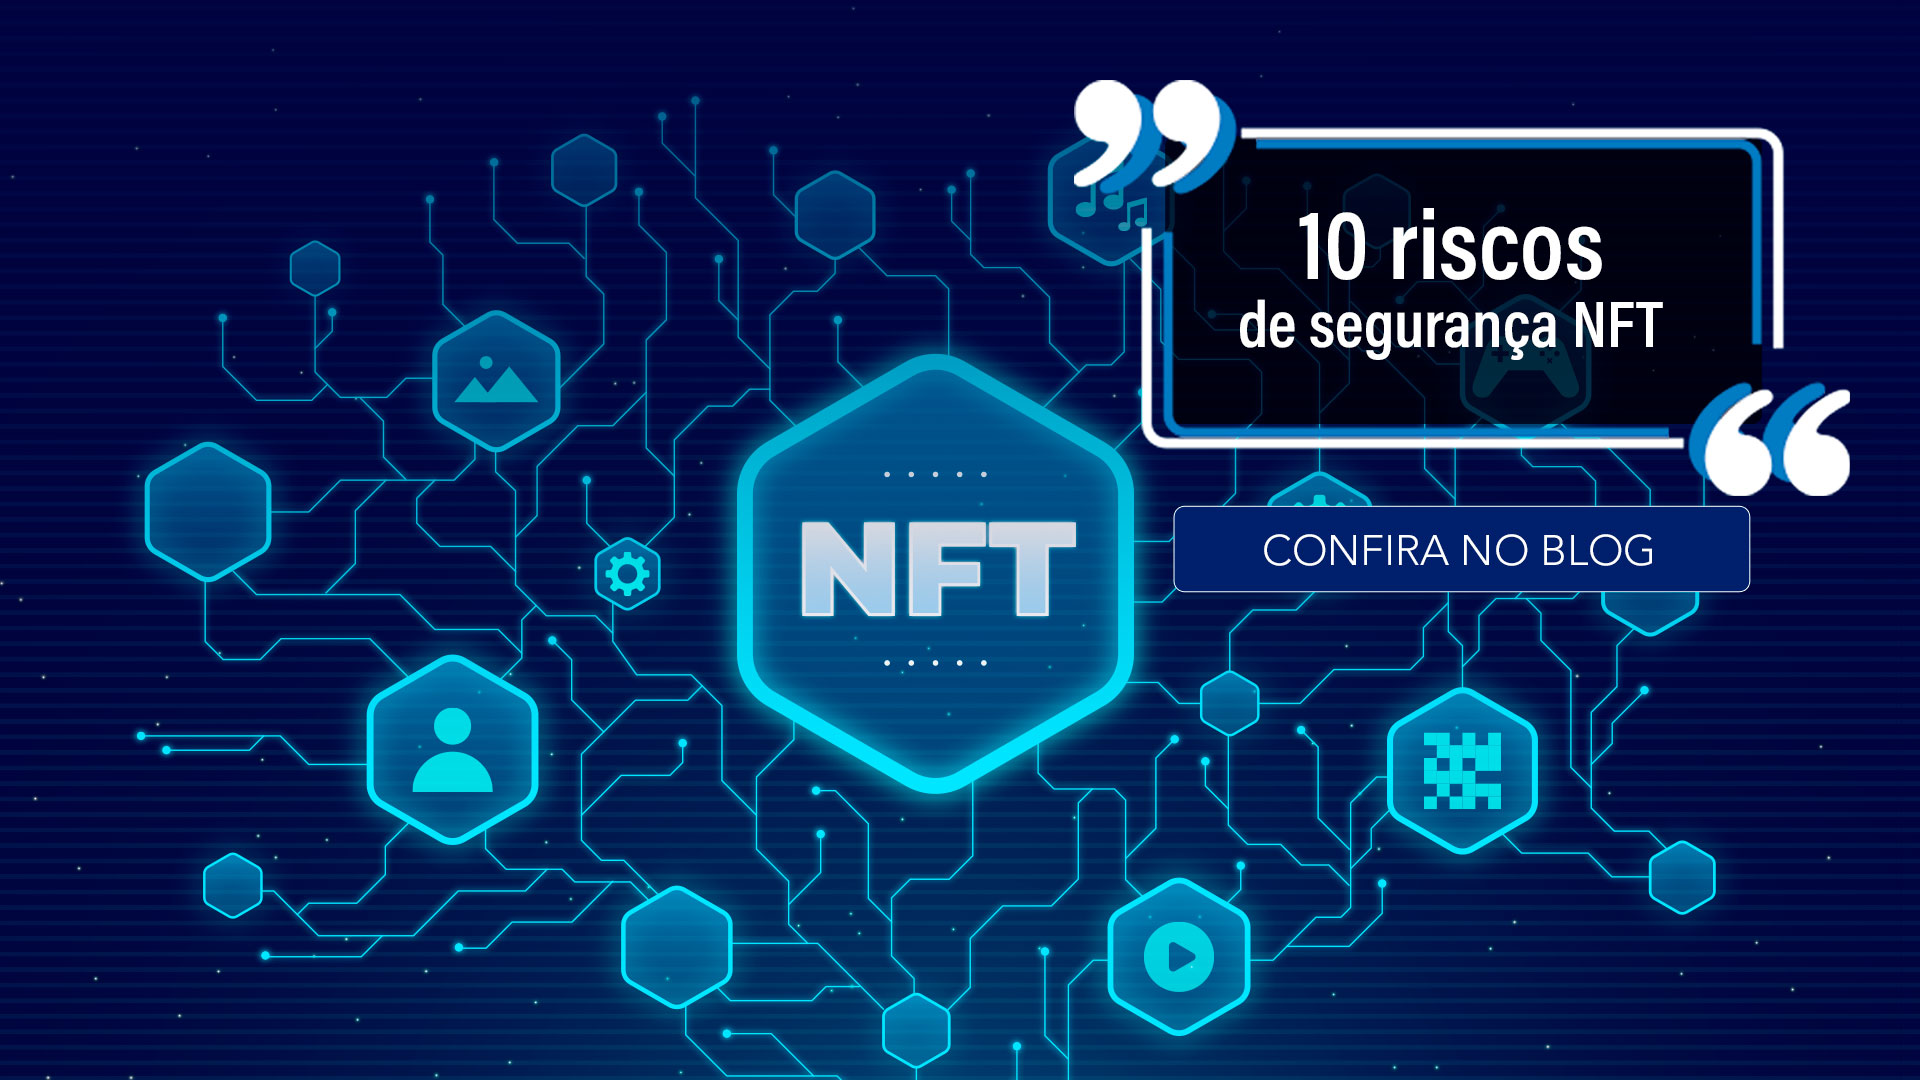 10 riscos de segurança NFT